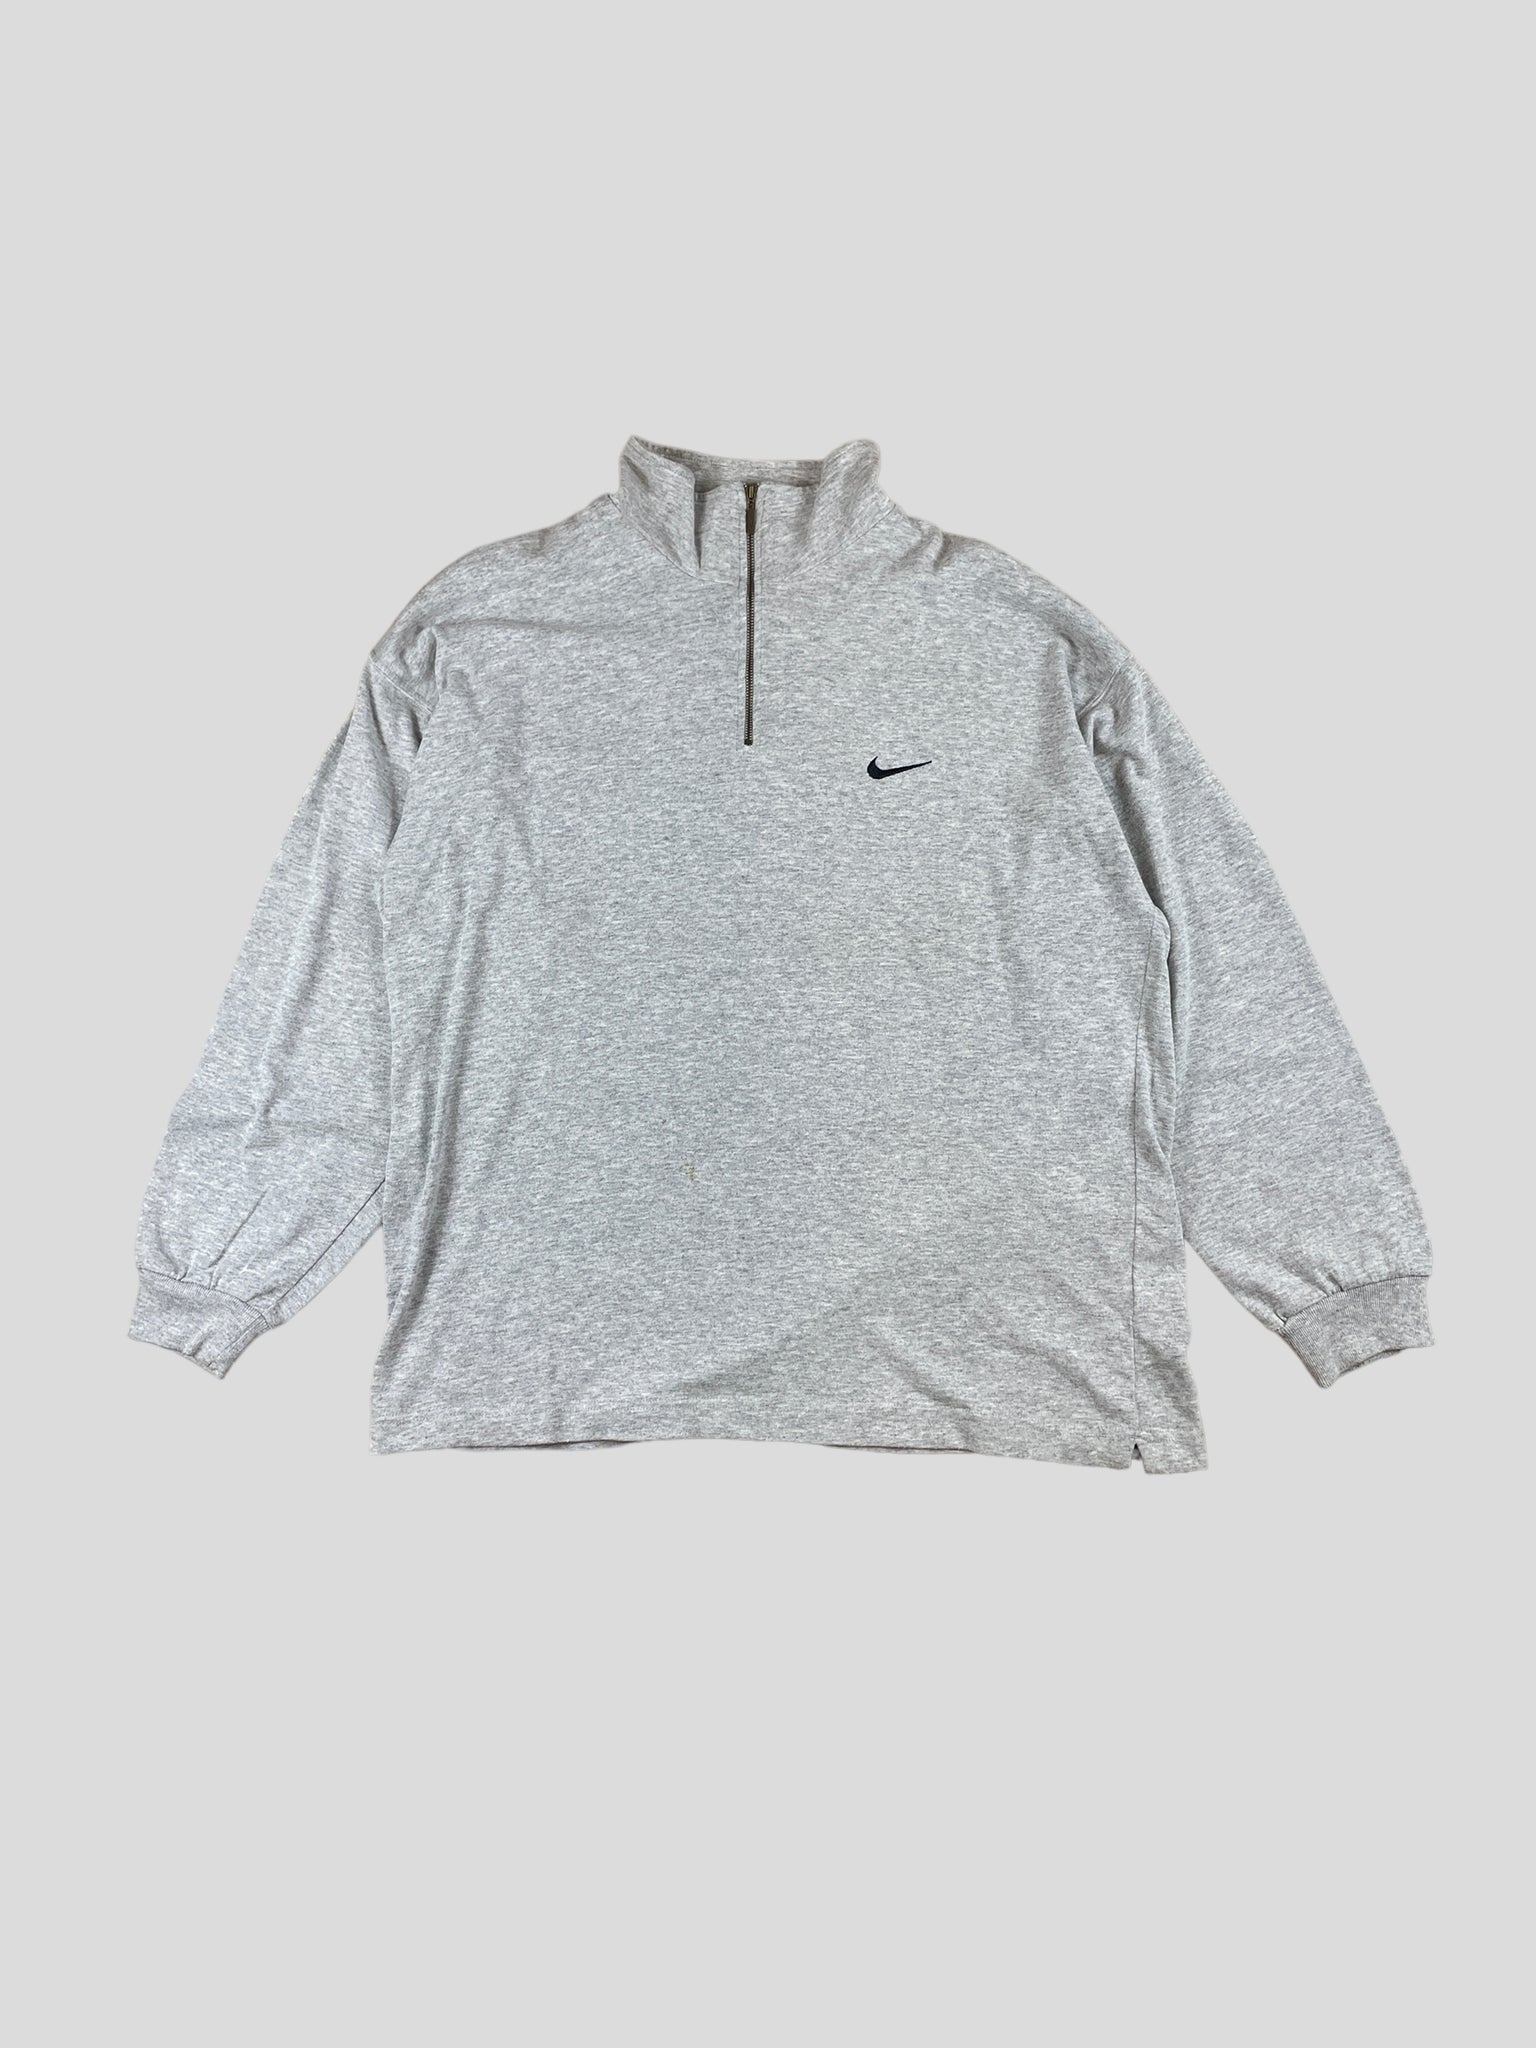 Nike 1/4 zip sweatshirt